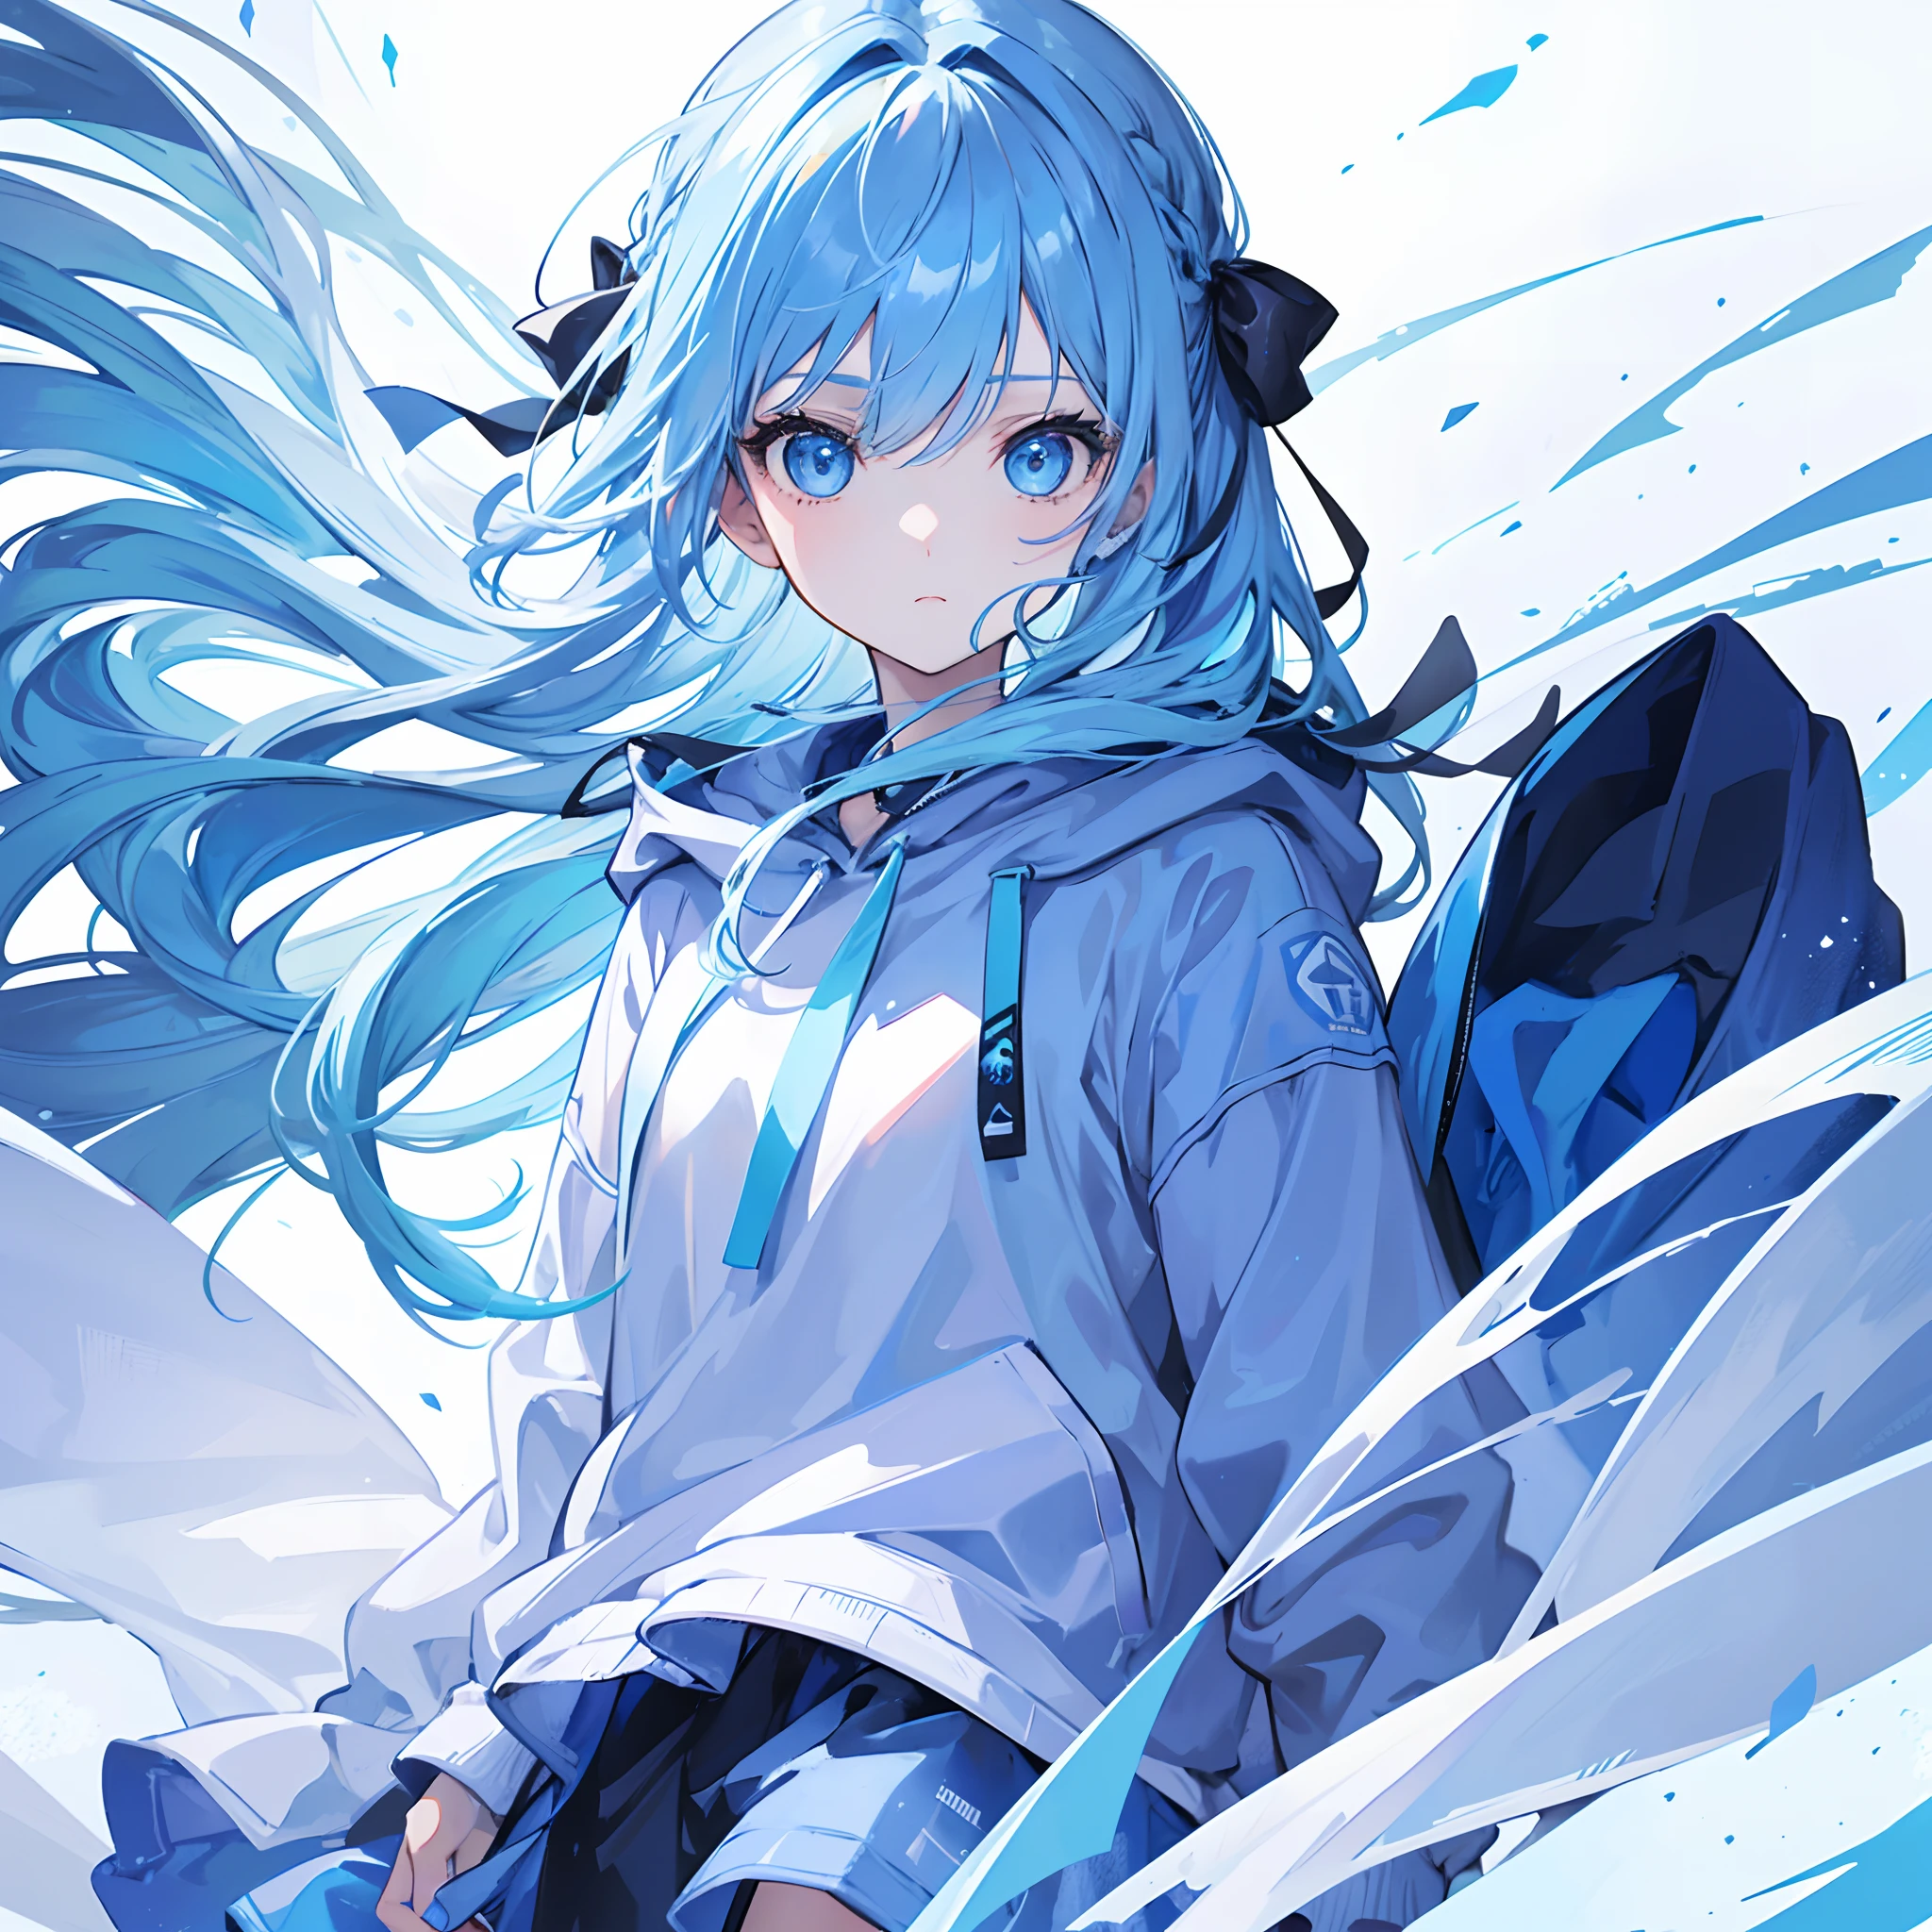 1fille, aux cheveux bleu clair et aux yeux bleus, portant un ruban à cheveux et un sweat à capuche bleu et blanc. La scène se déroule en hiver, avec la fille regardant directement le spectateur. Cette image peut être utilisée comme photo de profil.